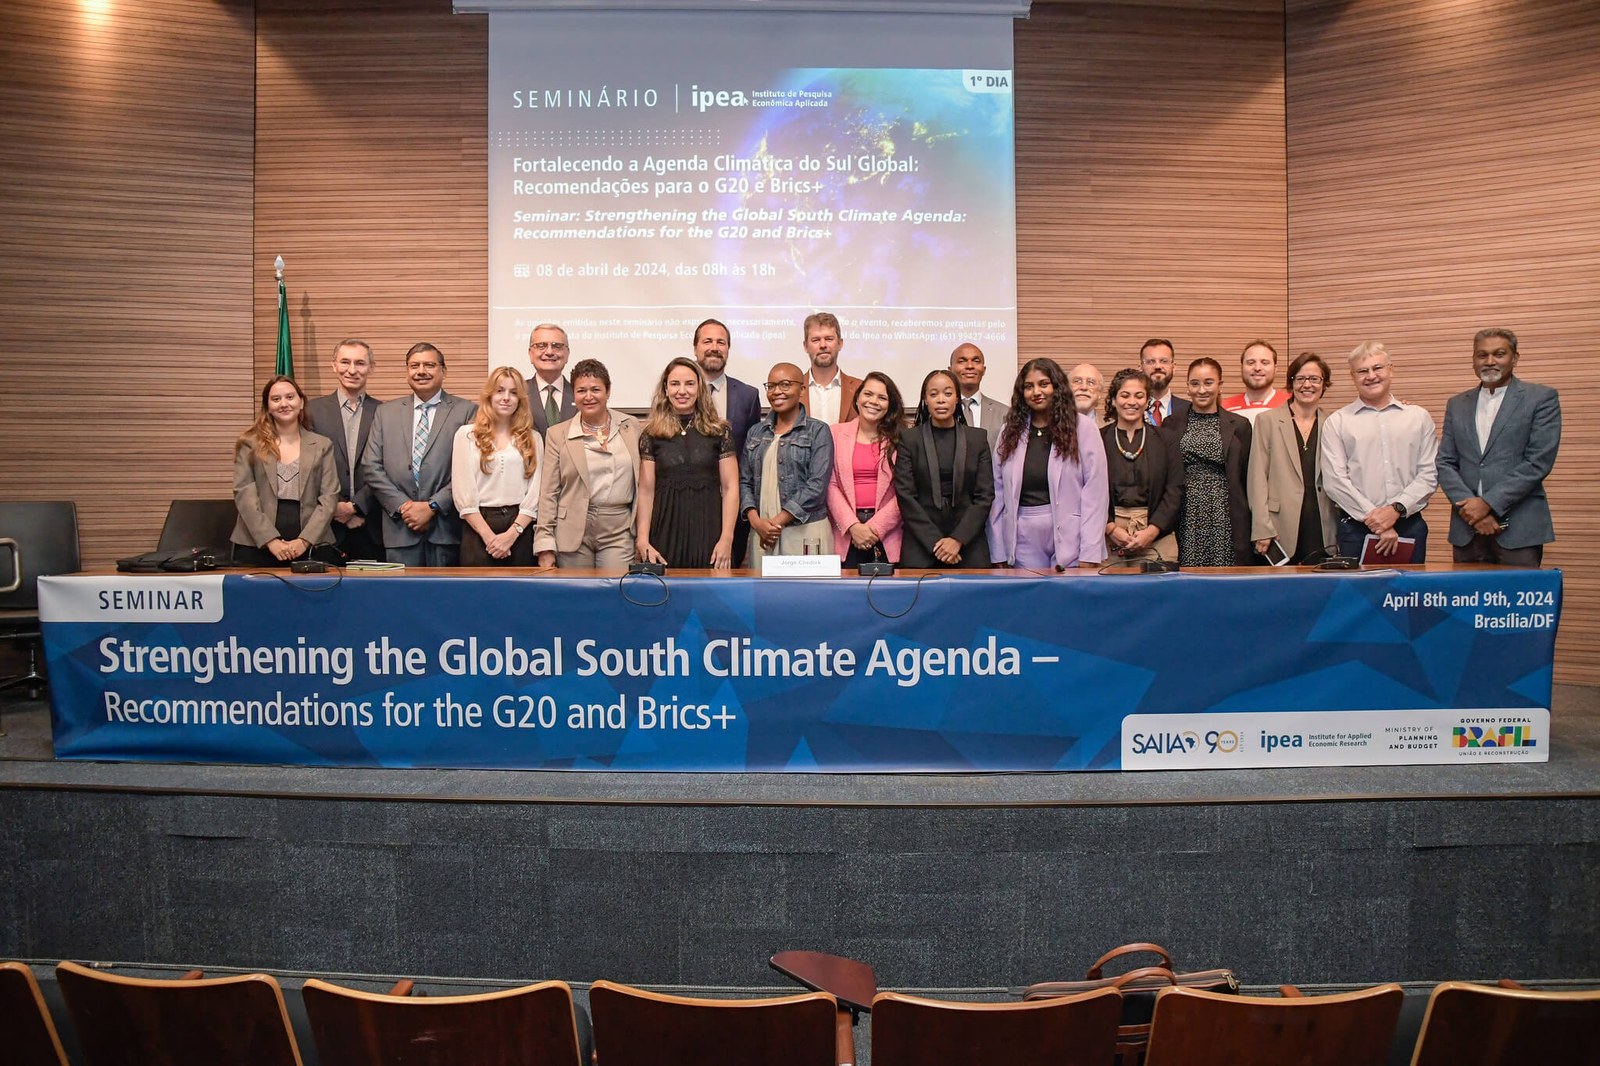 Seminario: Fortaleciendo la Agenda Climática del Sur Global - Recomendaciones para el G20 y los BRICS+. Crédito: Divulgación IPEA/ Helio Montferre